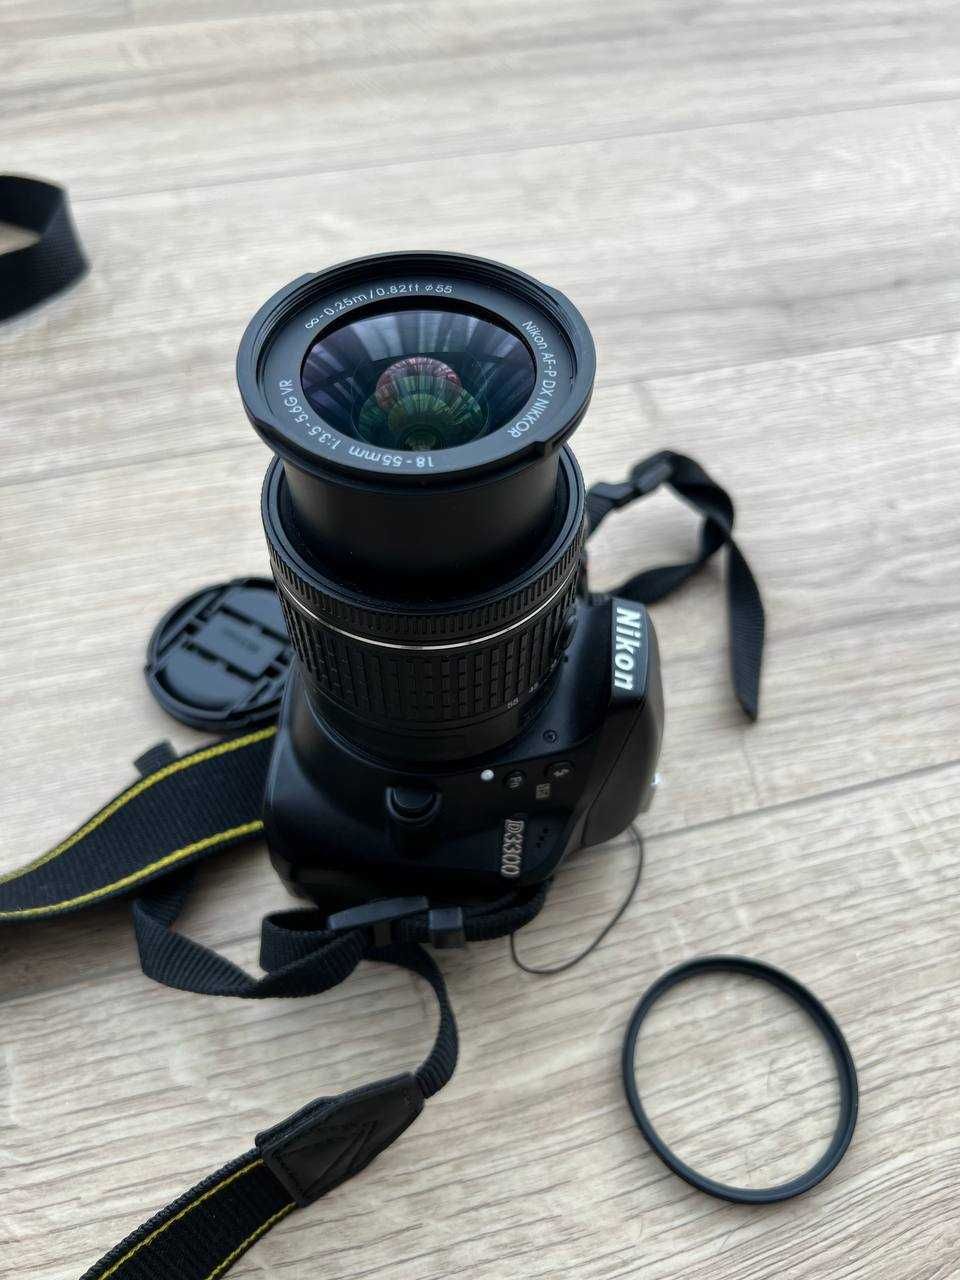 Продам Nikon d3300 + Af-p Nikkor 18-55mm 1:3.5-5.6G dx VR